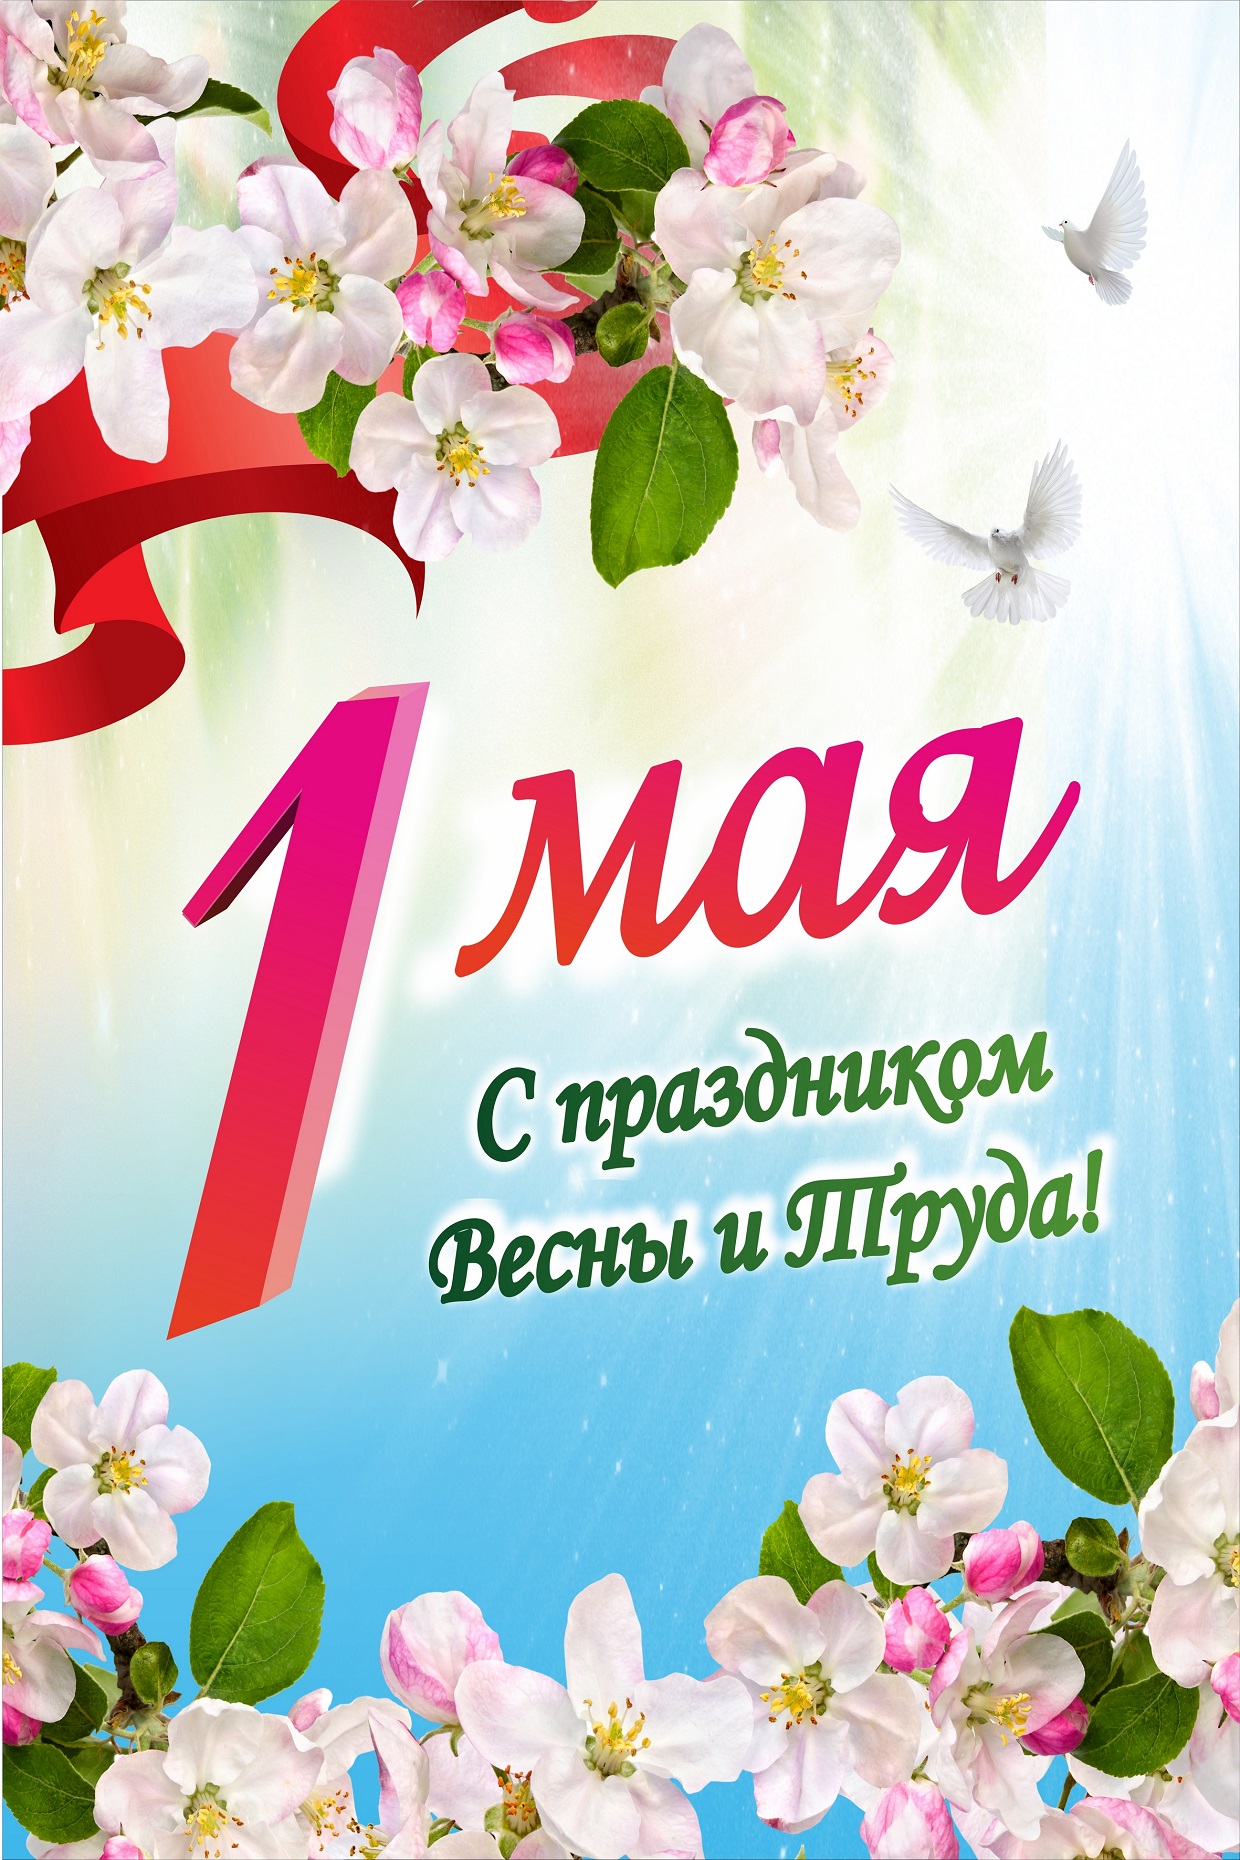 Праздник 1 мая официальное название. 1 Мая праздник. 1 Майя. С 1 маем. С праздником первого мая.